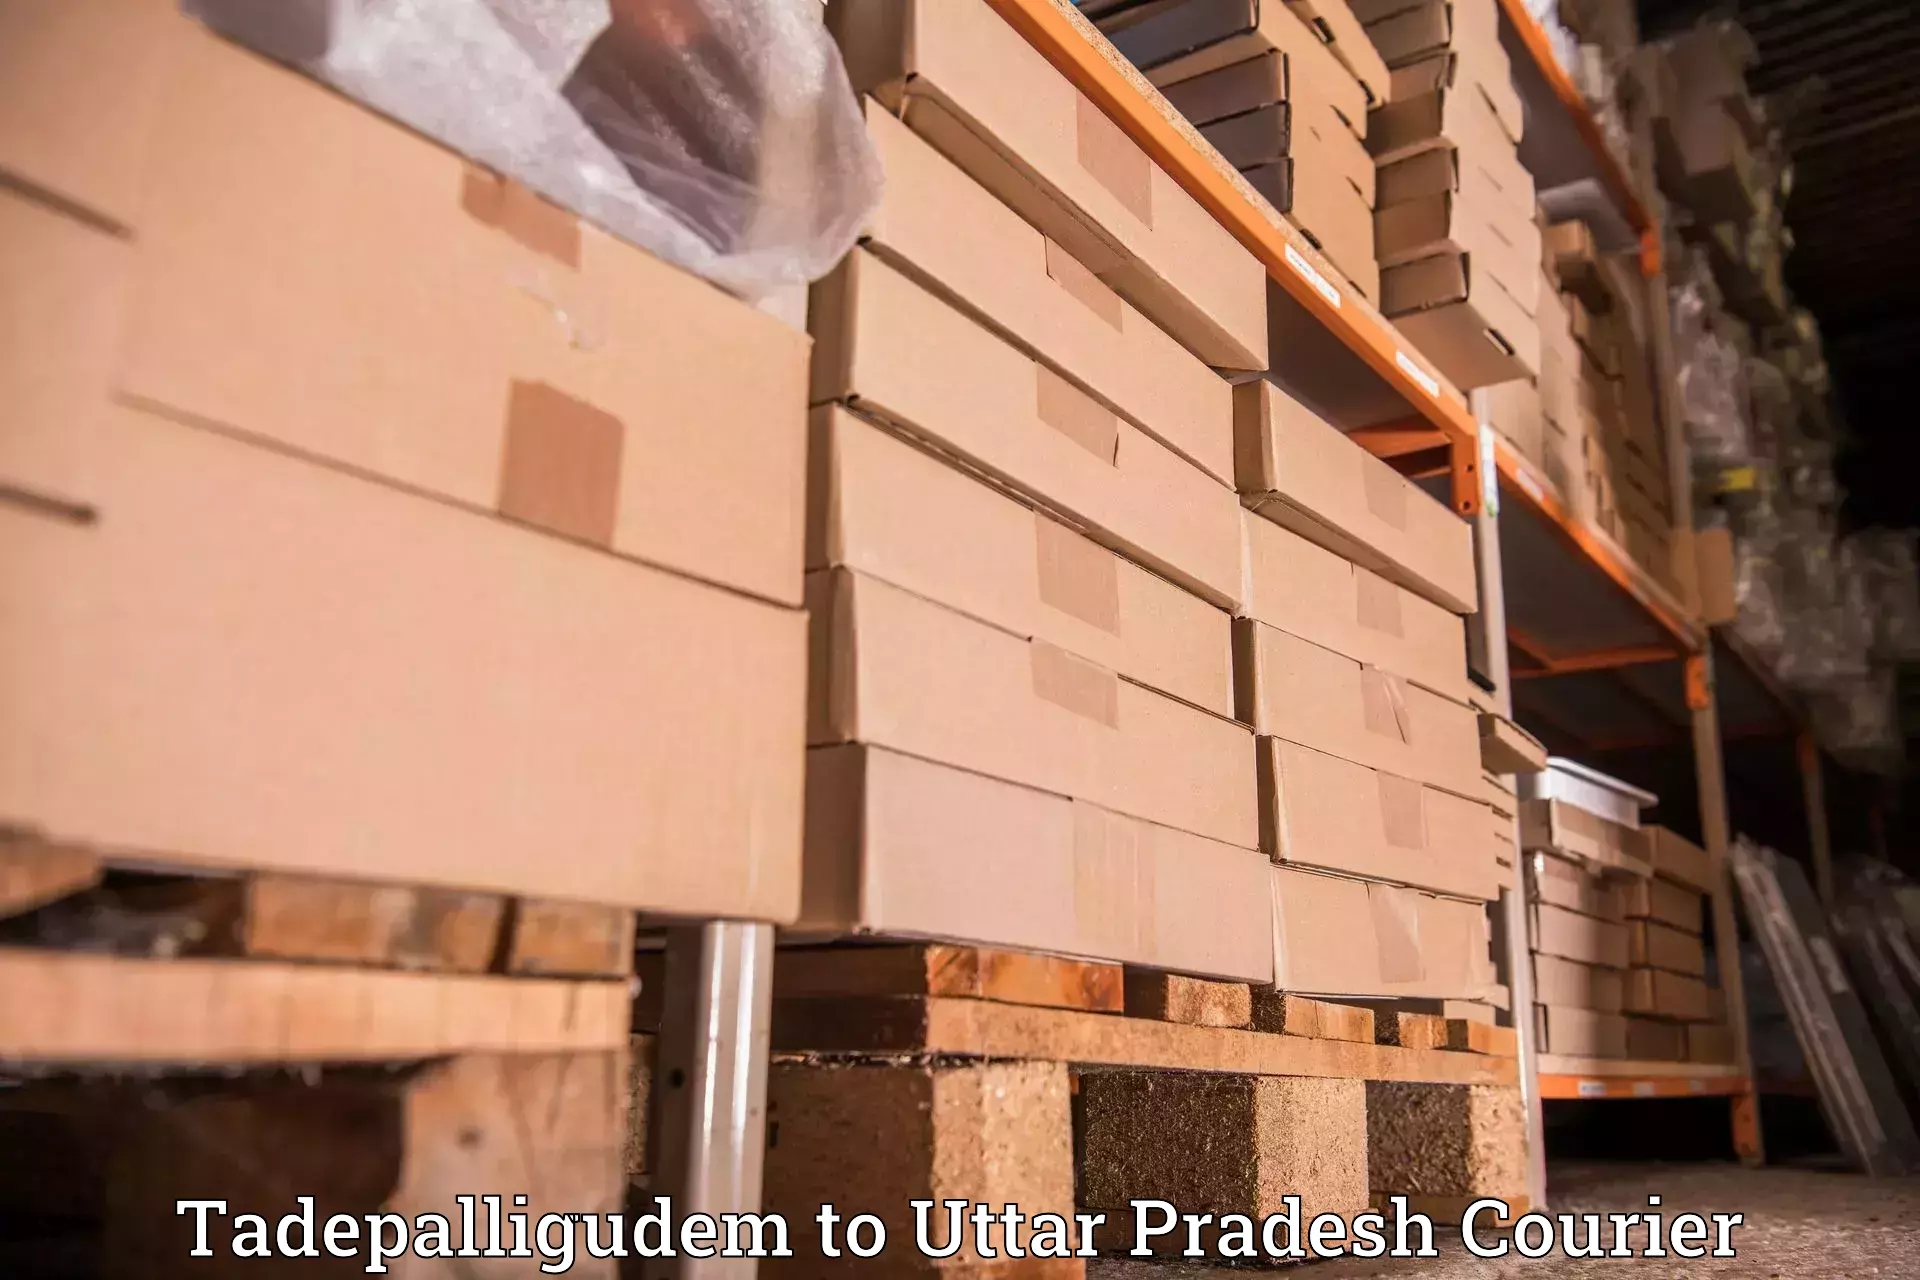 Reliable logistics providers Tadepalligudem to Ghazipur